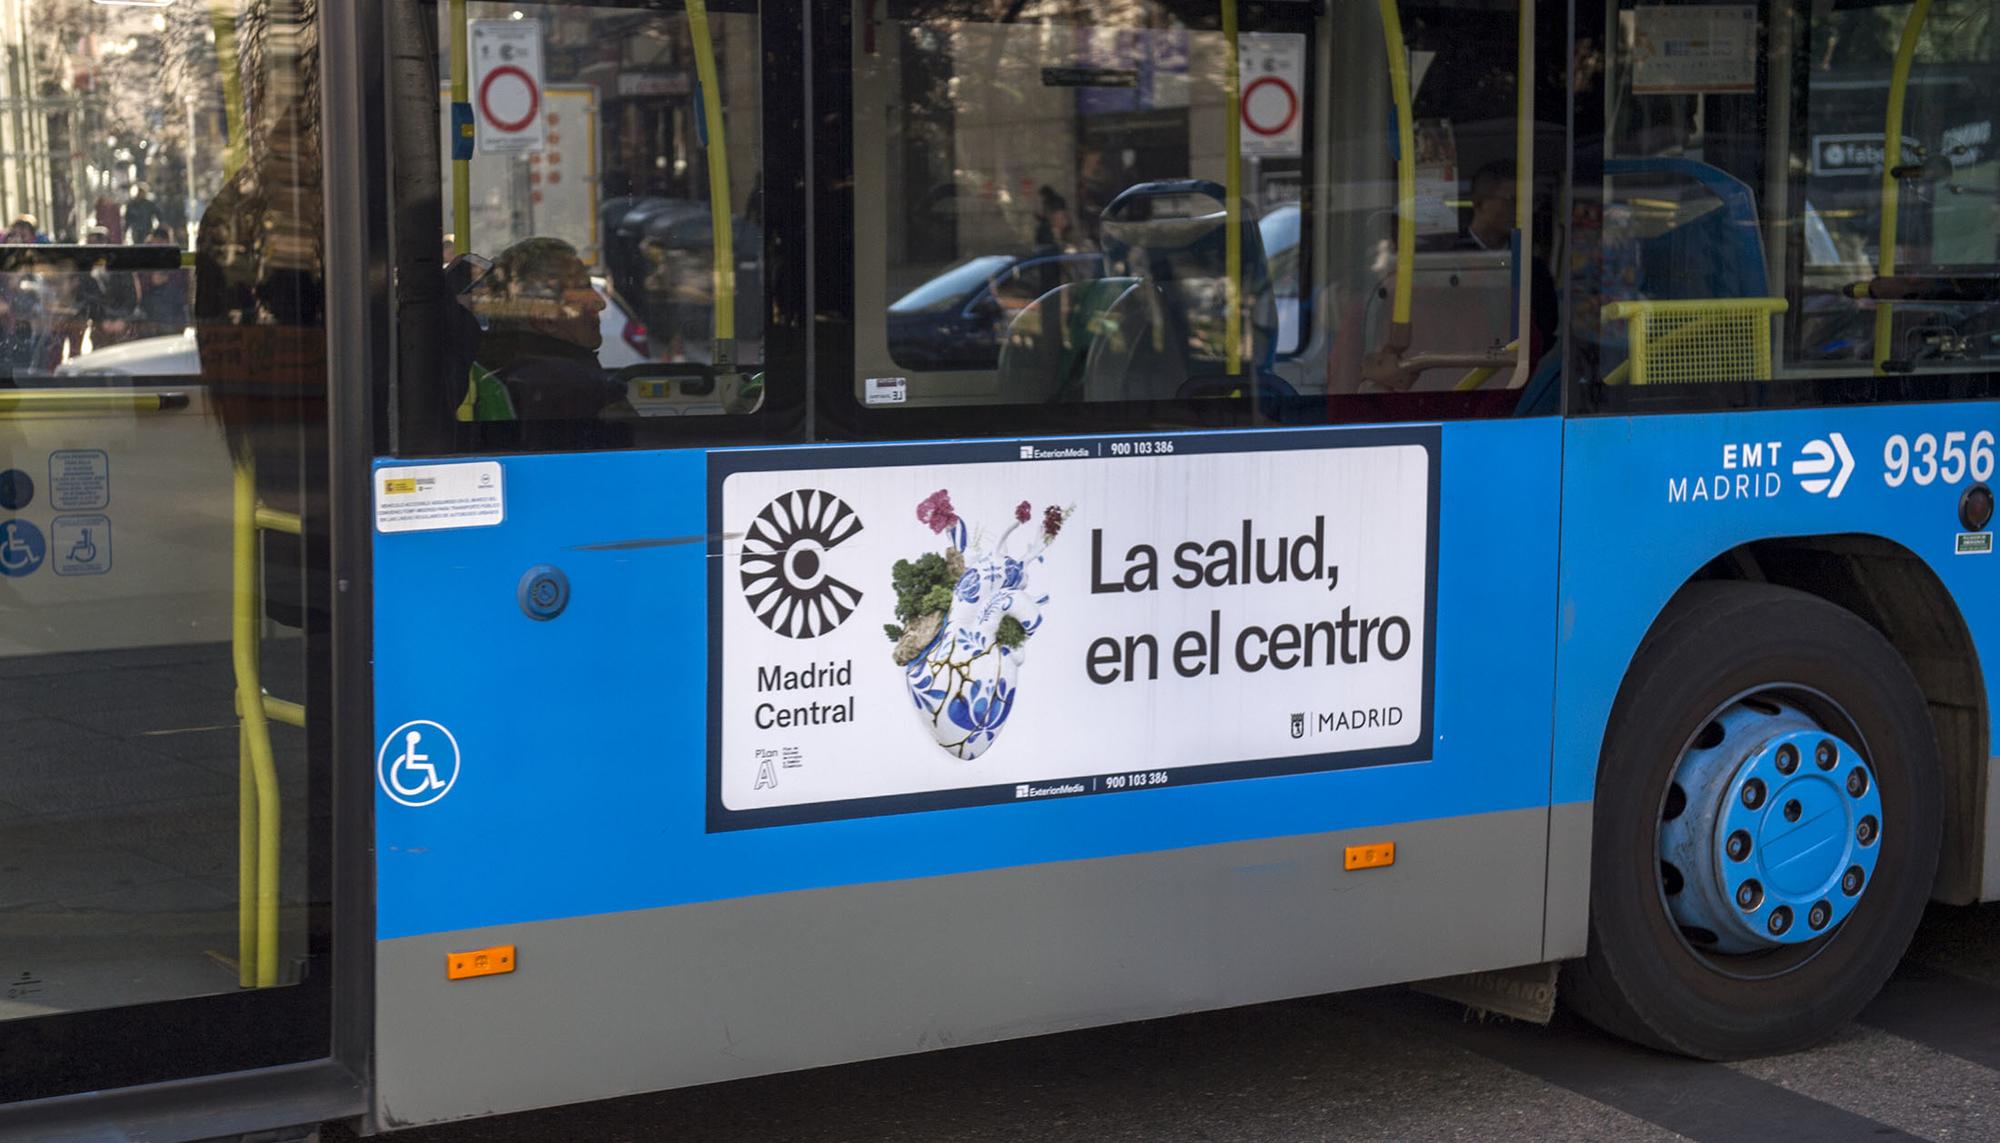 Madrid Central Autobus